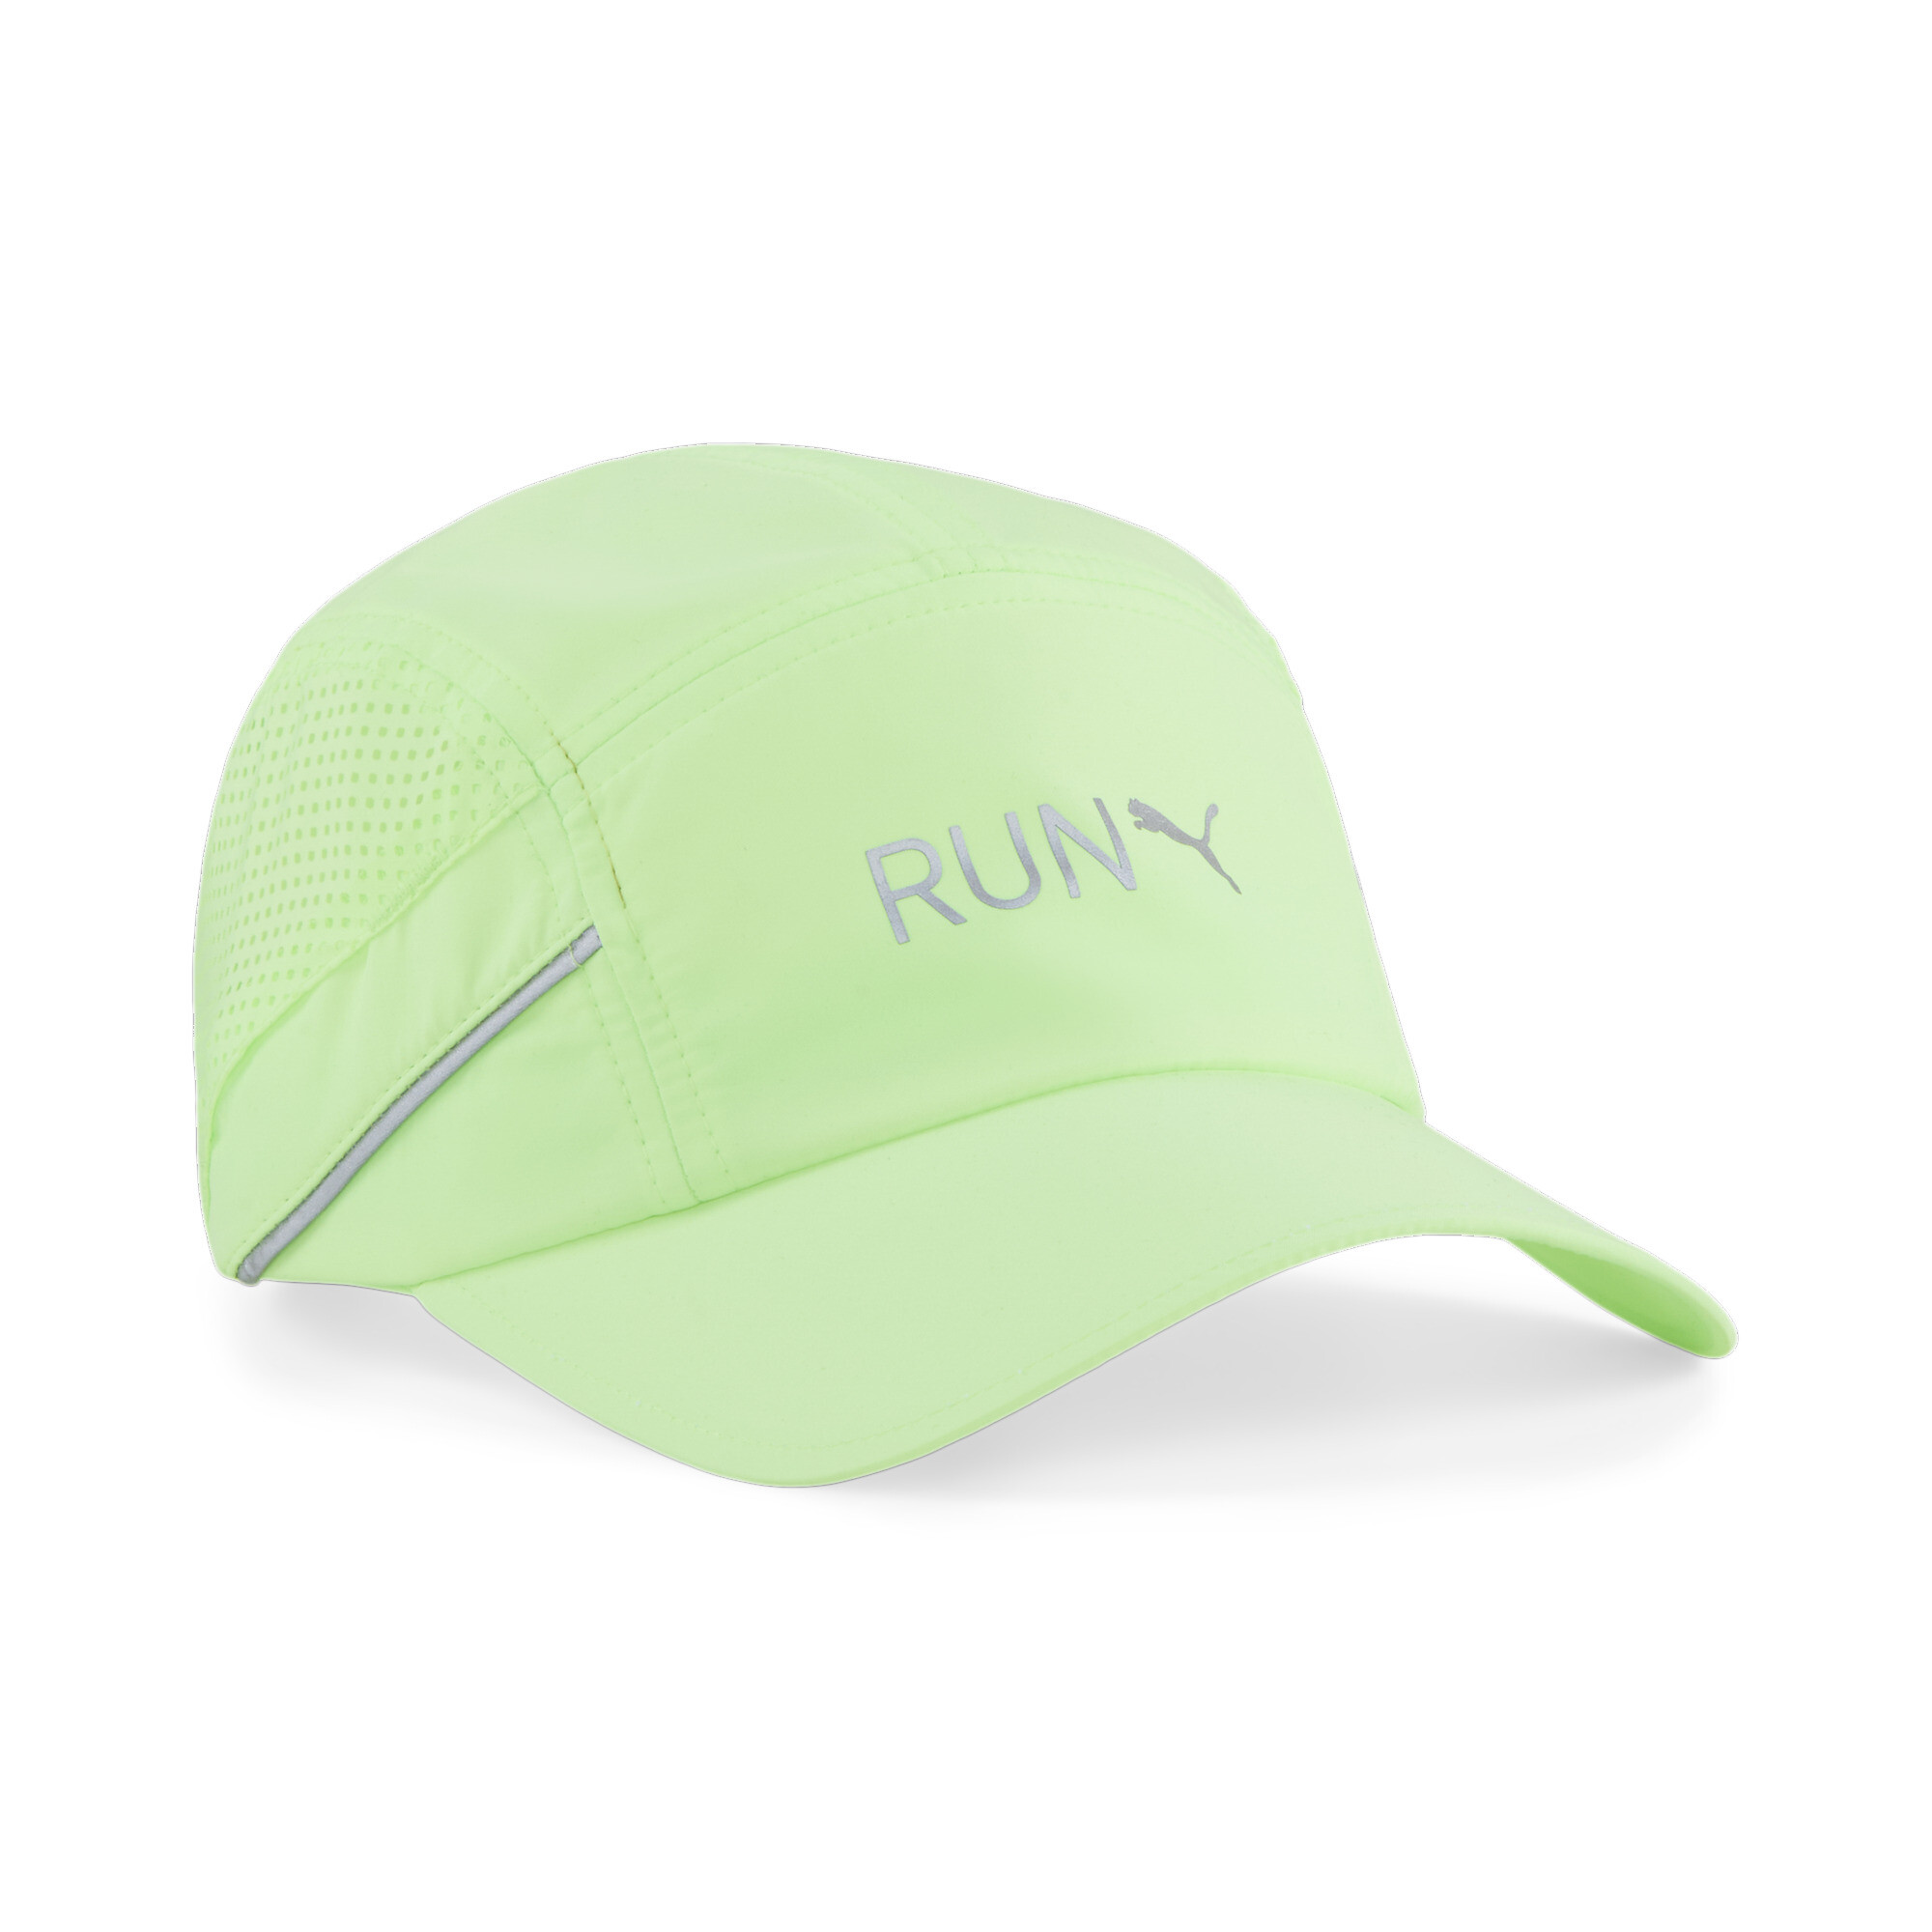 Puma Lightweight Running Cap, Green, Size Adult, Accessories